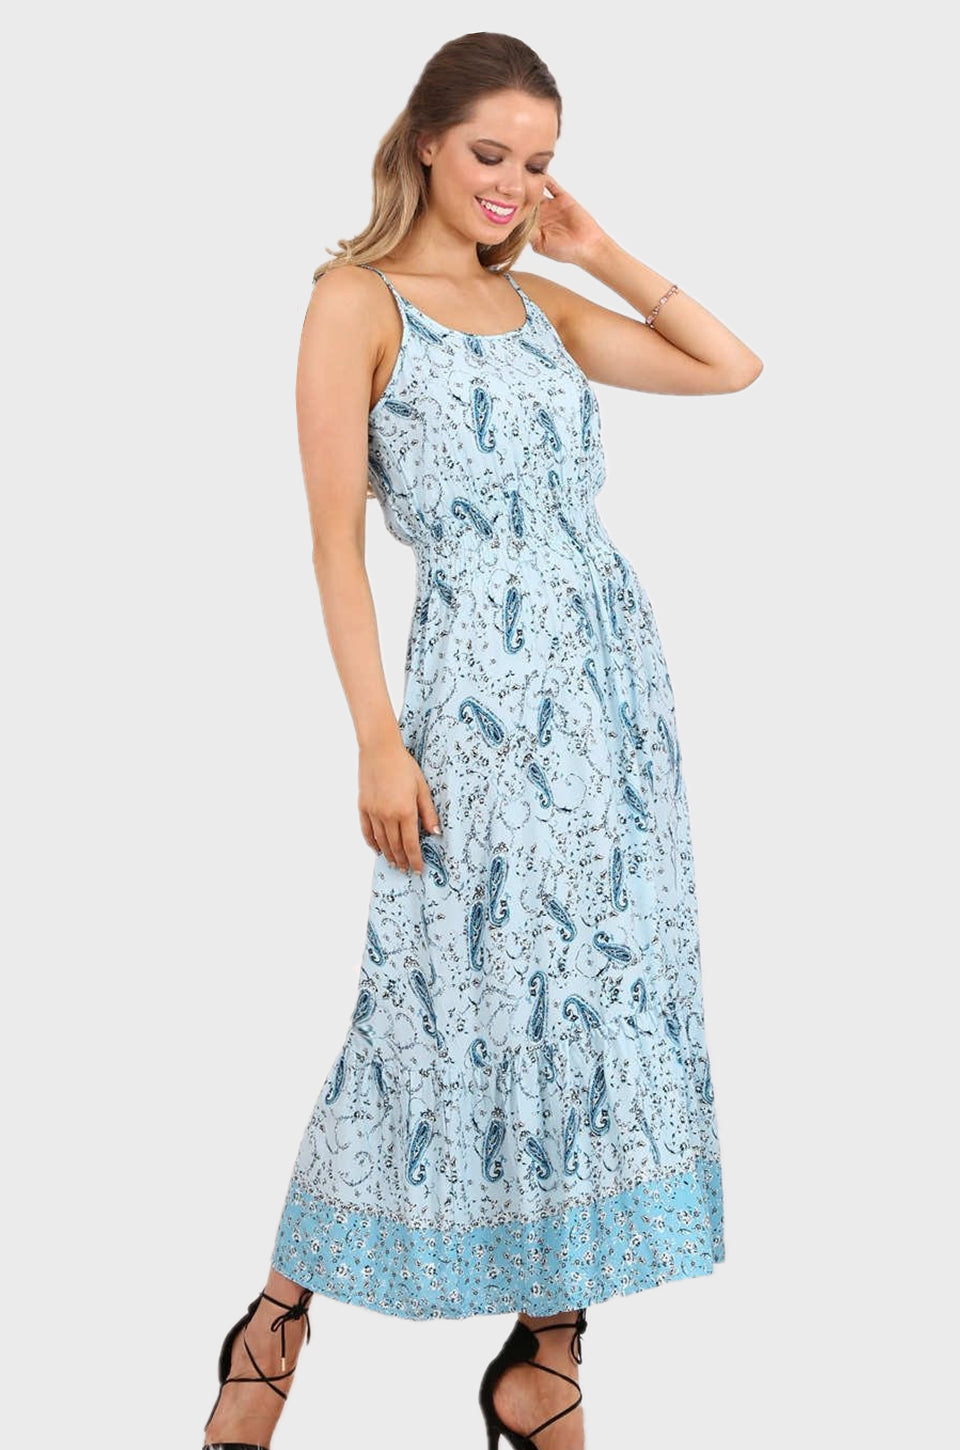 MISS PINKI Sara maxi dress in blue paisley print